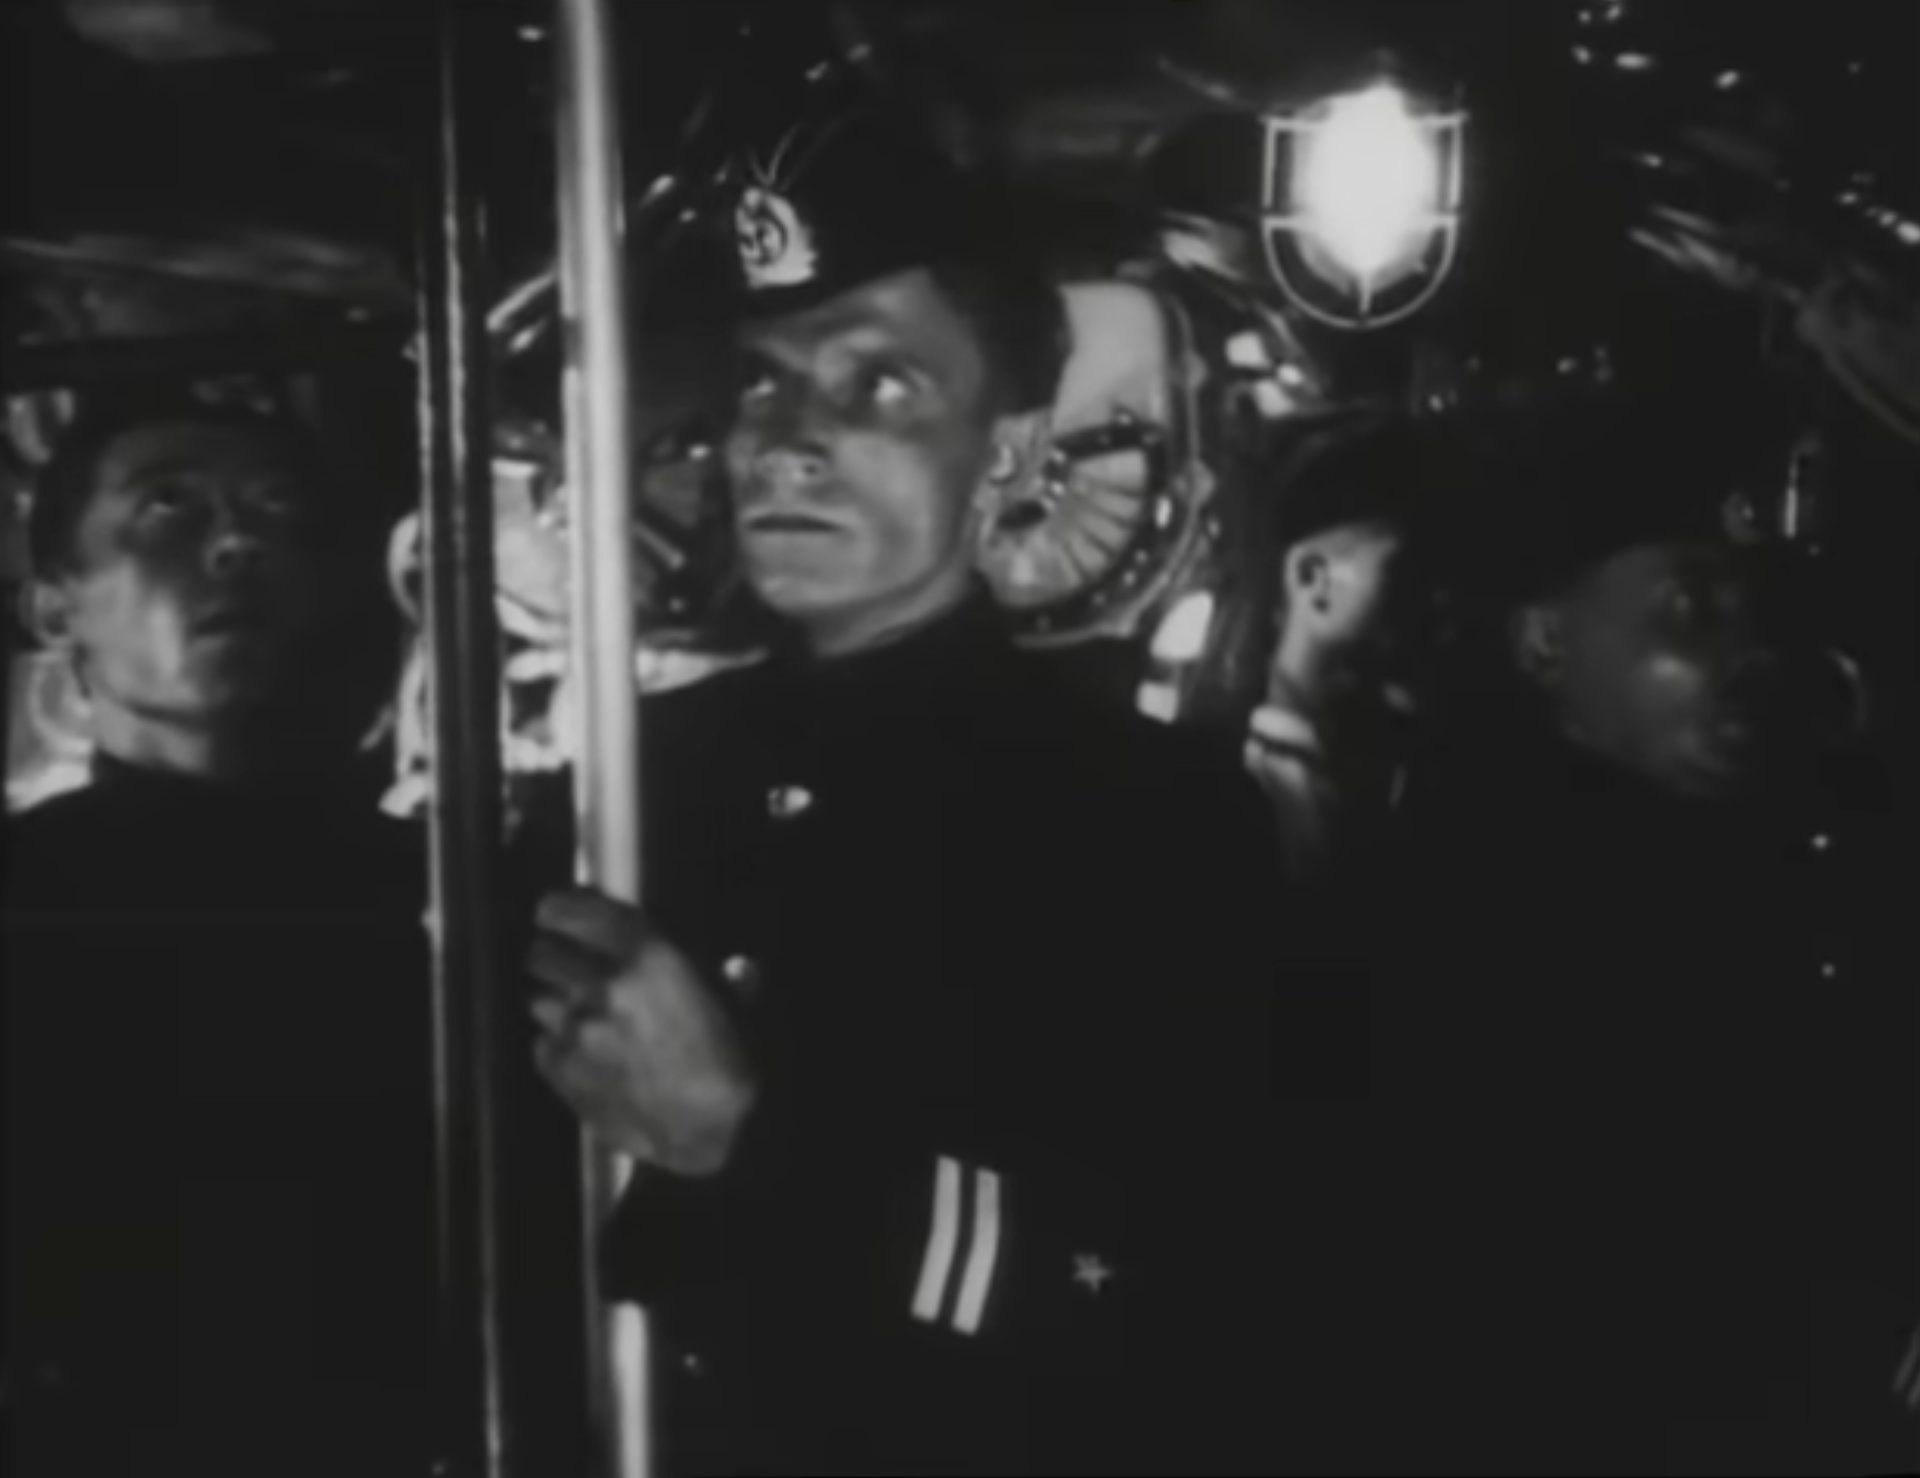 Schwarz-Weiß-Szene im Innern eines sowjetischen U-Bootes, die Besatzungsmitglieder blicken besorgt nach oben.